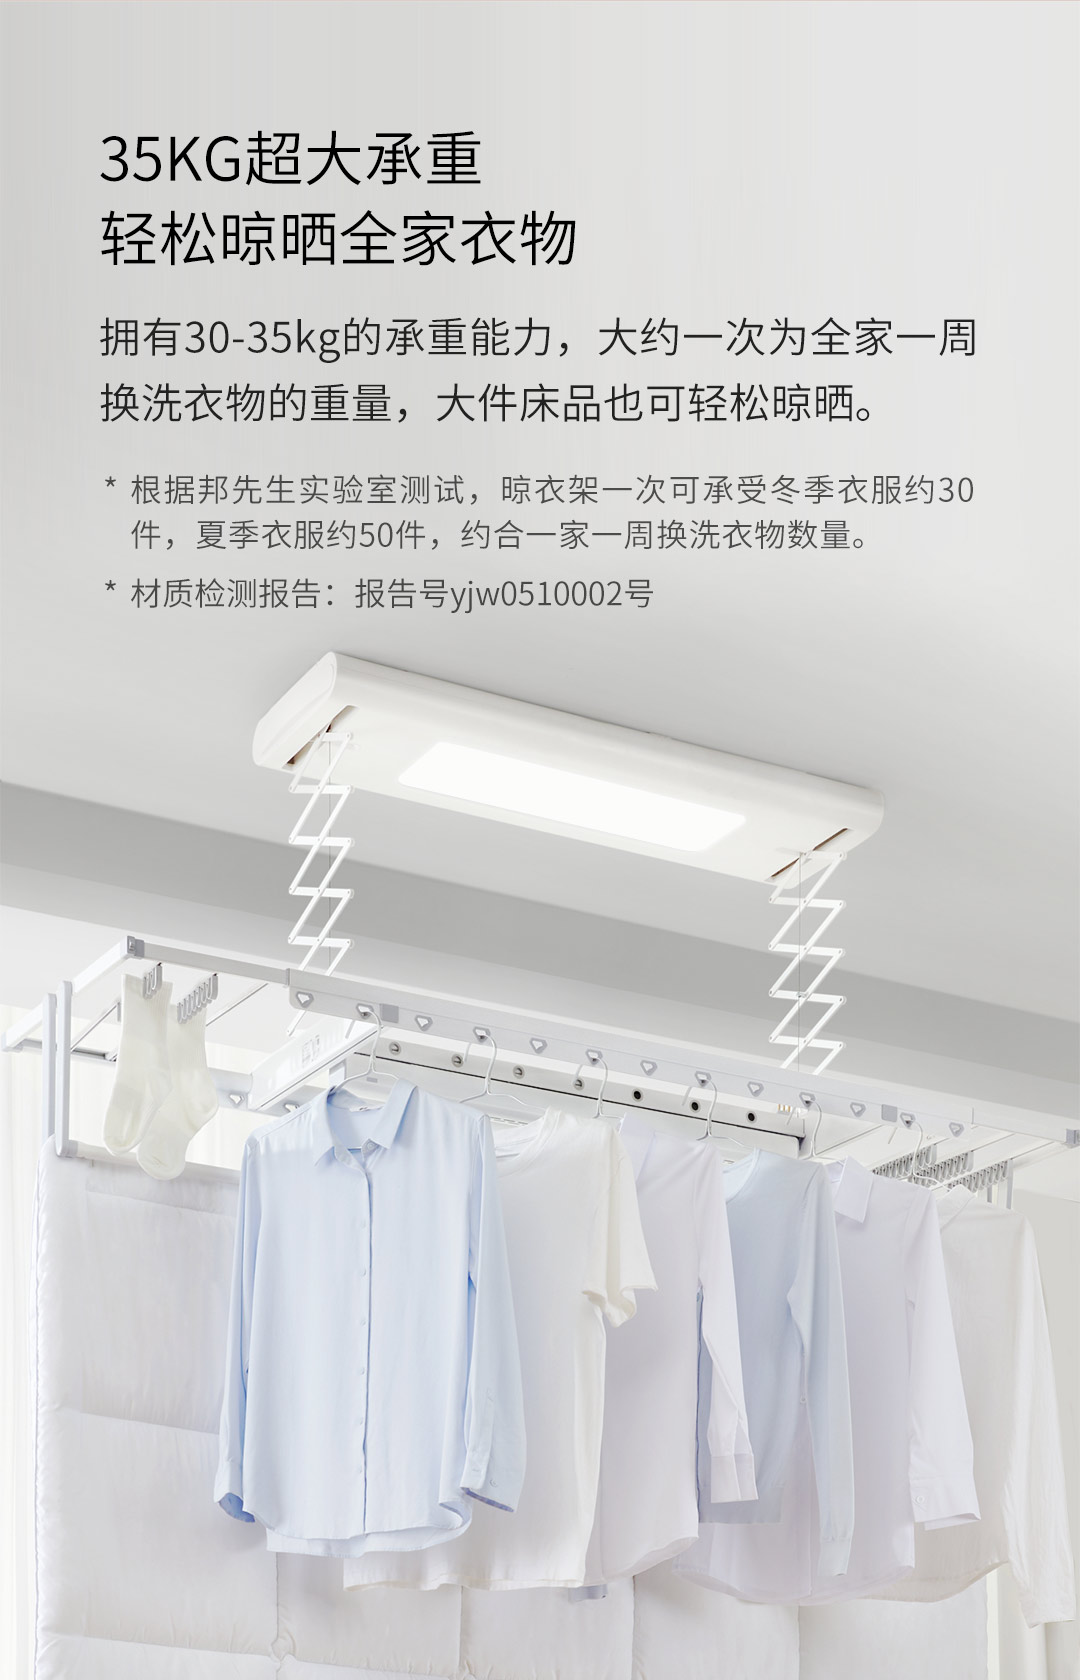 Xiaomi Mr Bond Smart Clothes